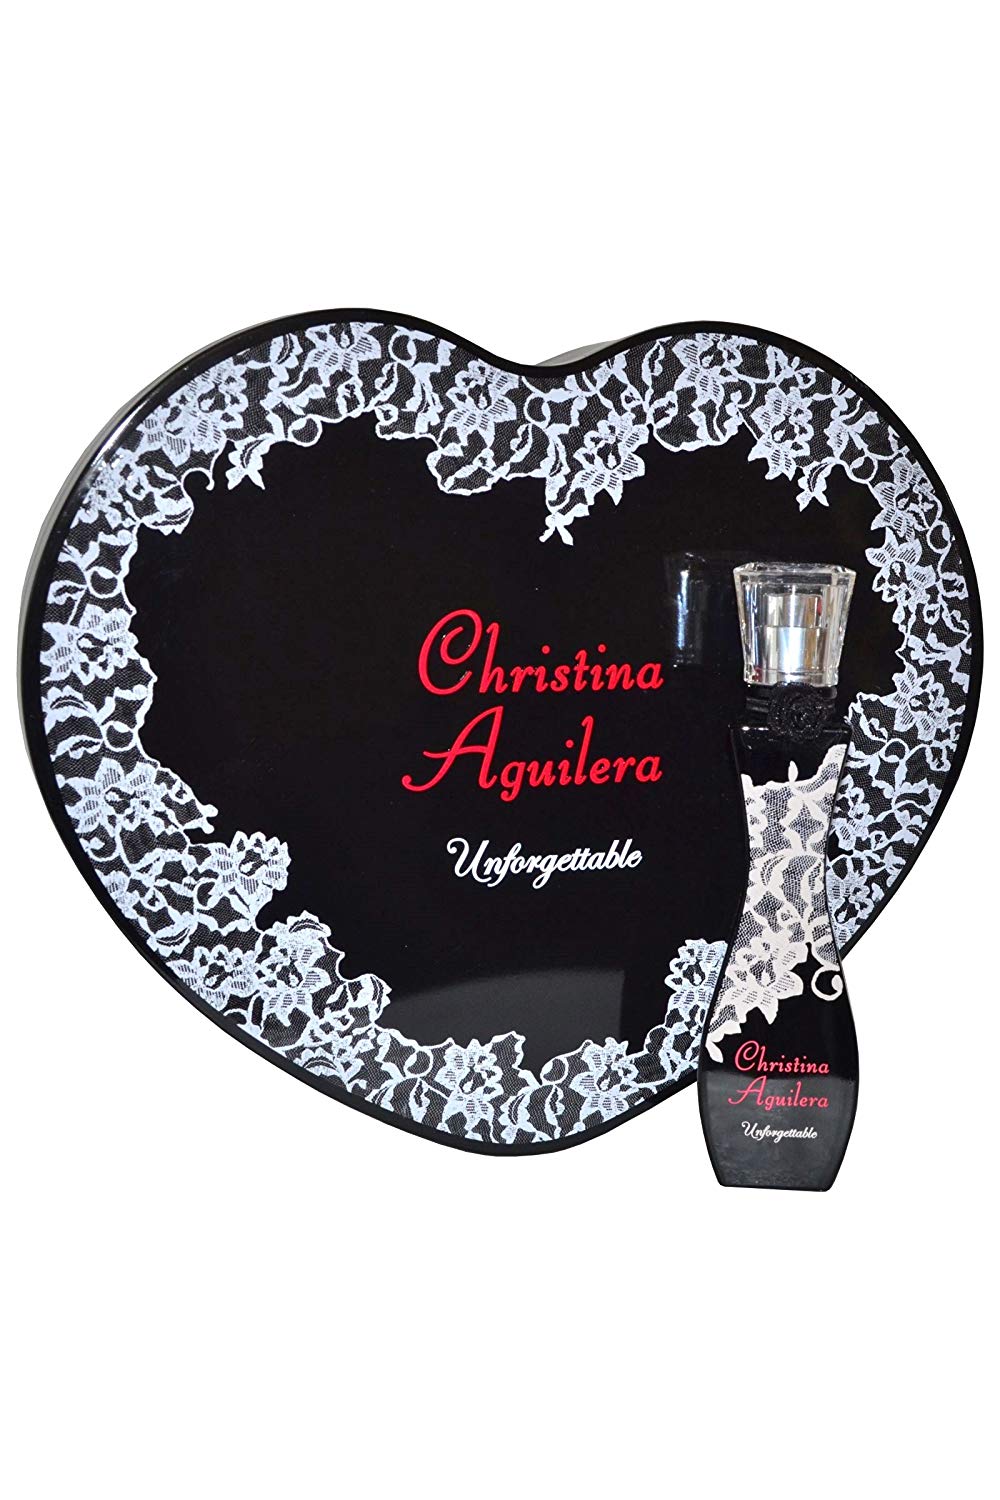 Christina Aguilera Unforgettable Gift Set 30ml Eau du Parfum EDP + Tin Heart Box